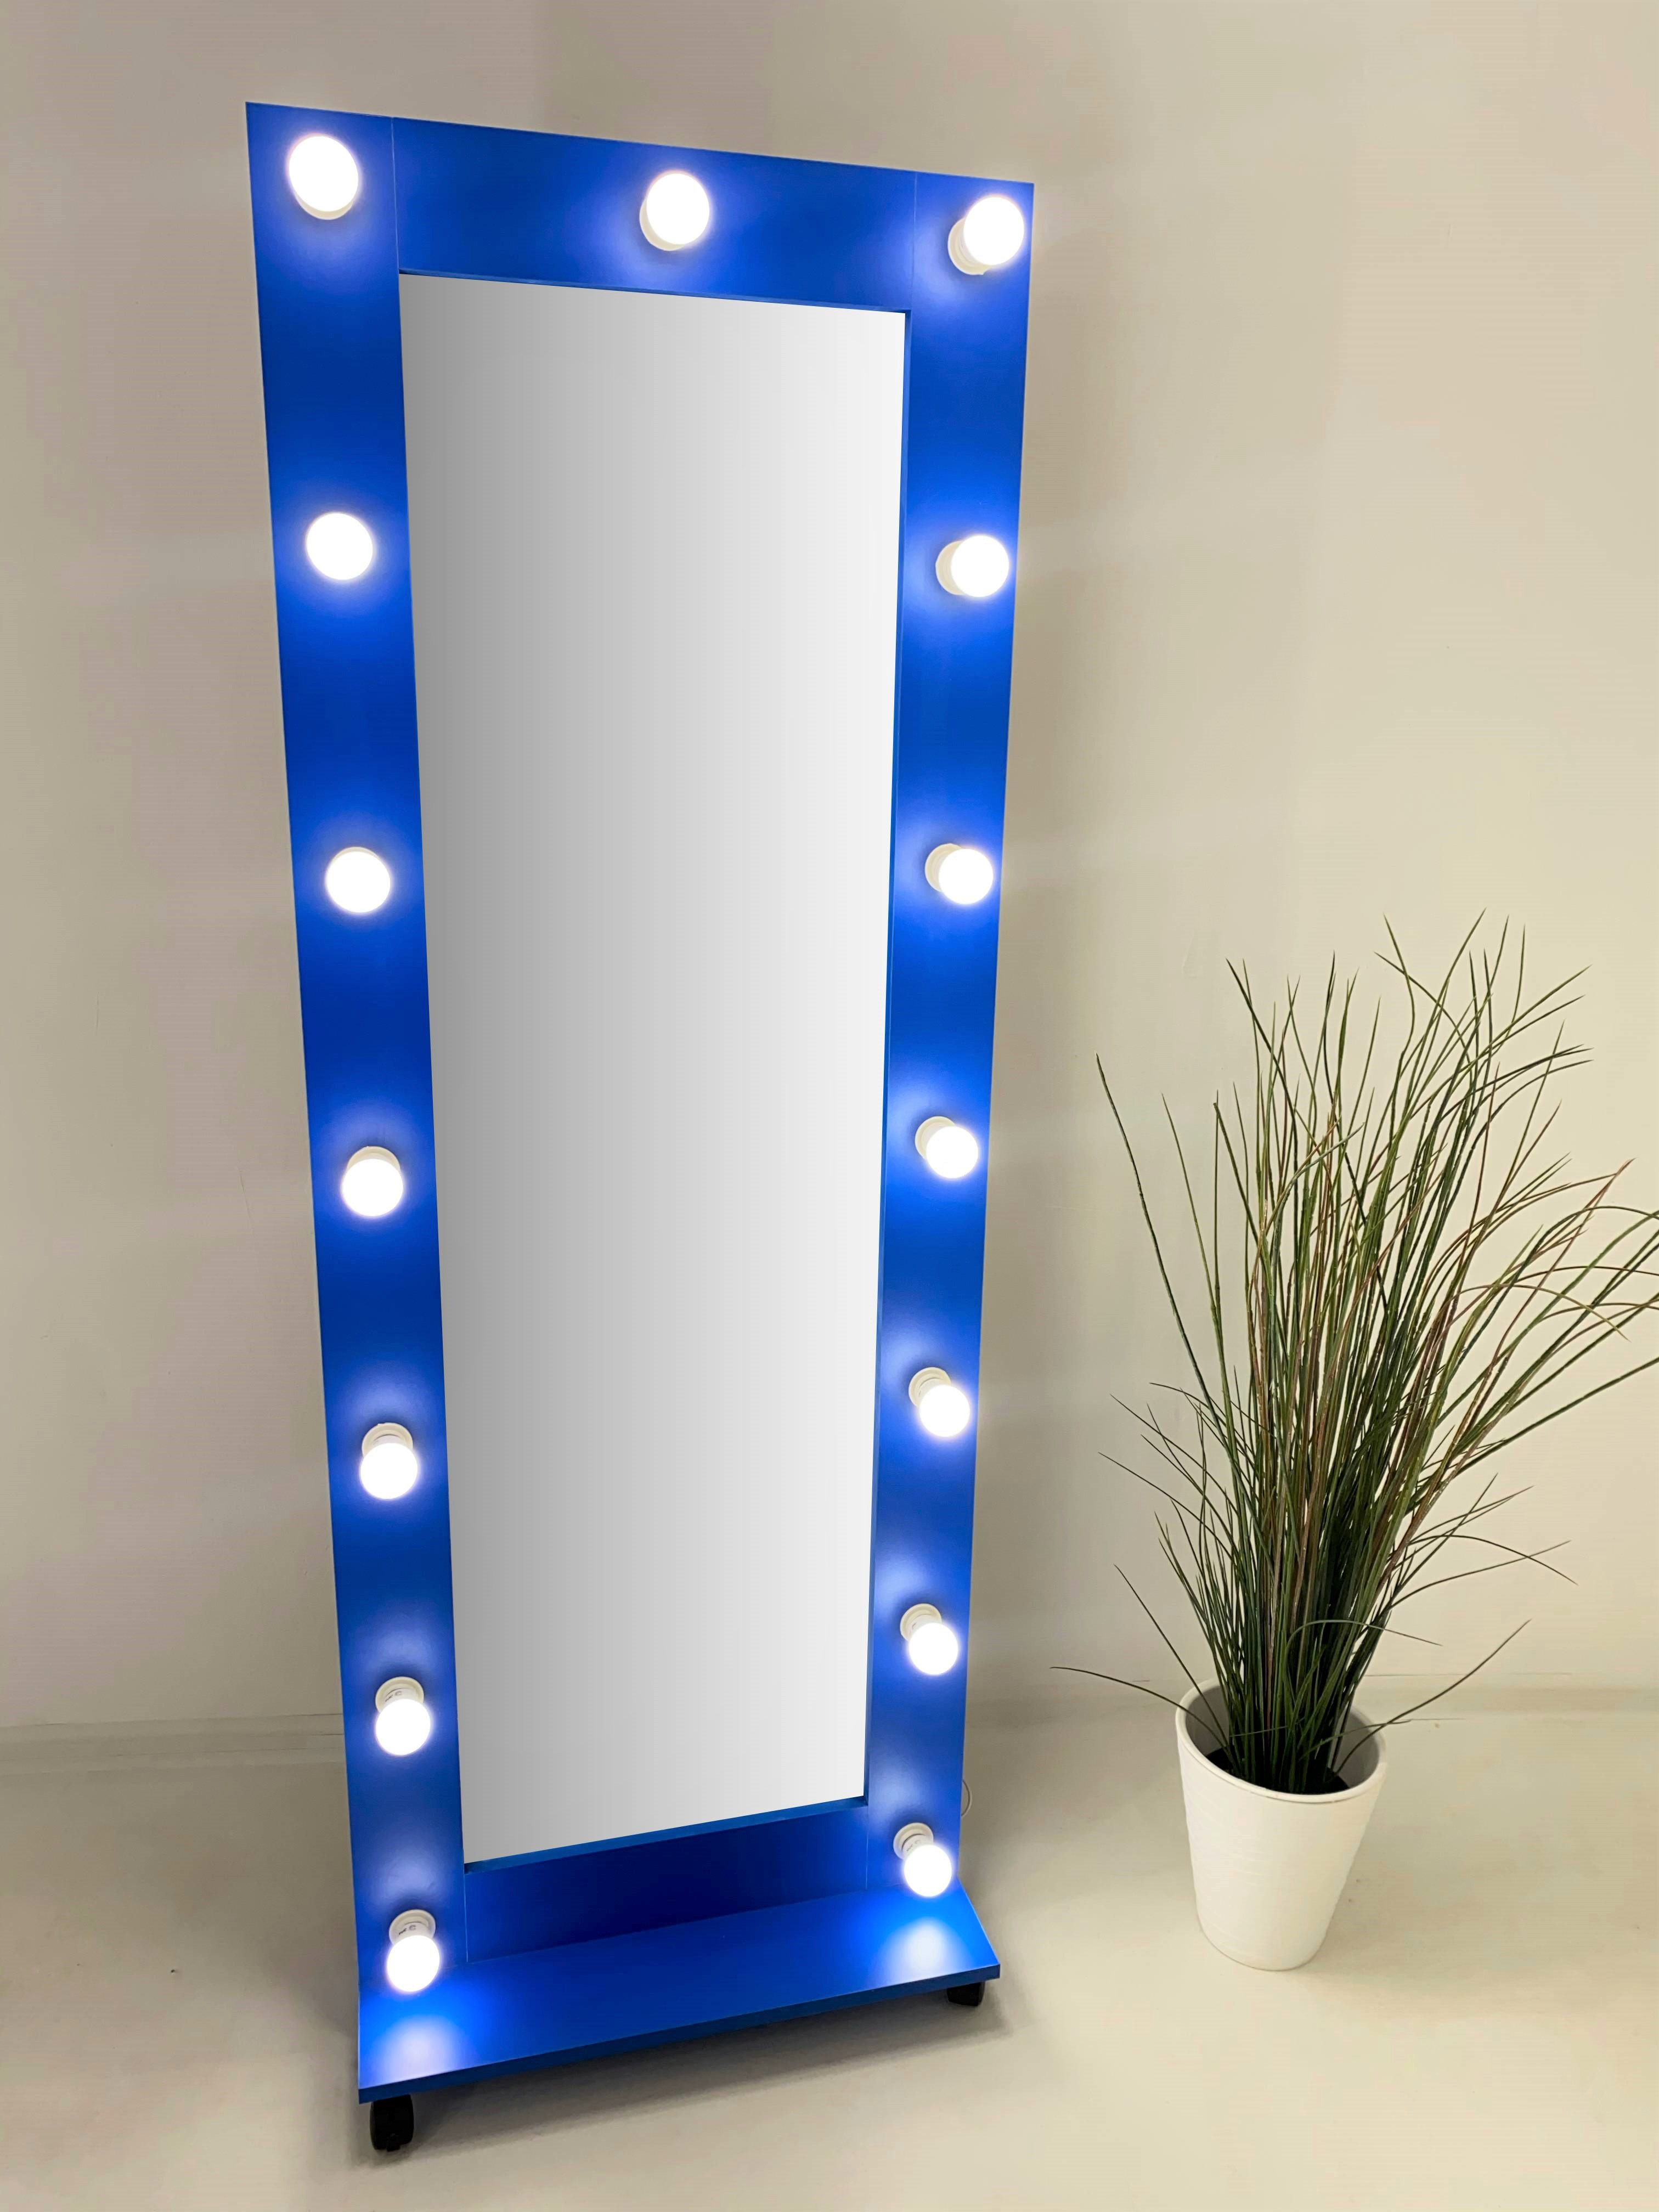 90911032 Гримерное зеркало 167x60 см с лампочками на подставке цвет Синий STLM-0420489 BEAUTYUP